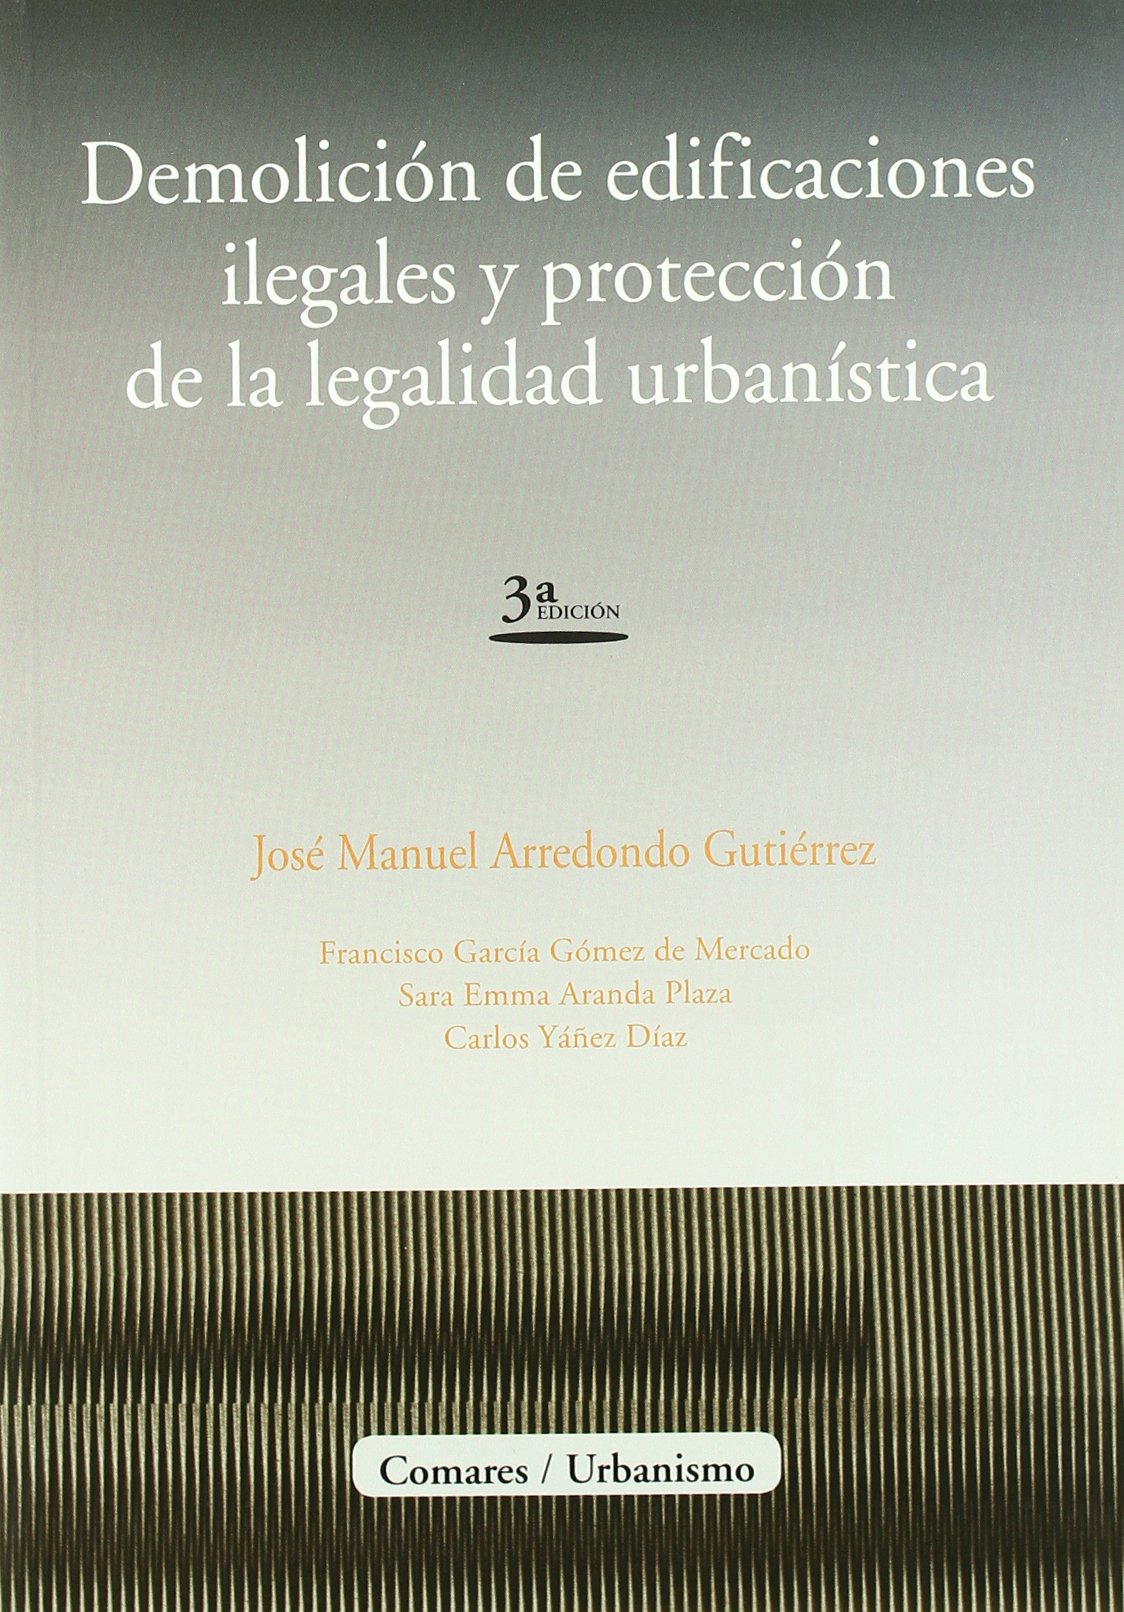 DEMOLICIÓN DE EDIFICACIONES ILEGALES Y PROTECCION LEGALIDAD URBANÍSTICA- ARREDONDO GUTIÉRREZ